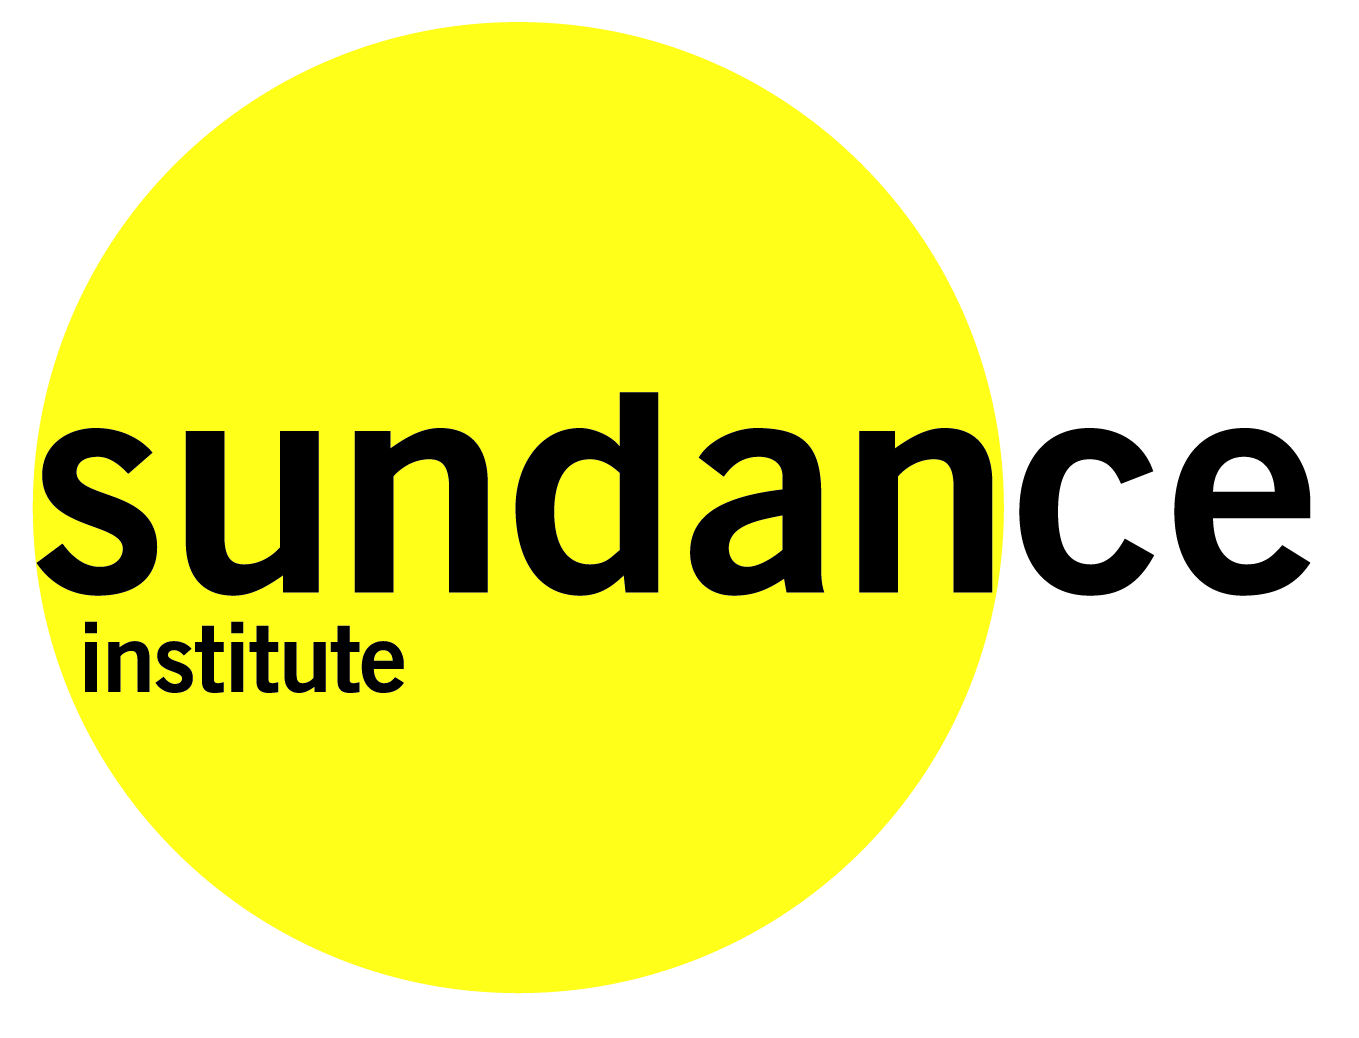 Sundance logo white background large.jpg